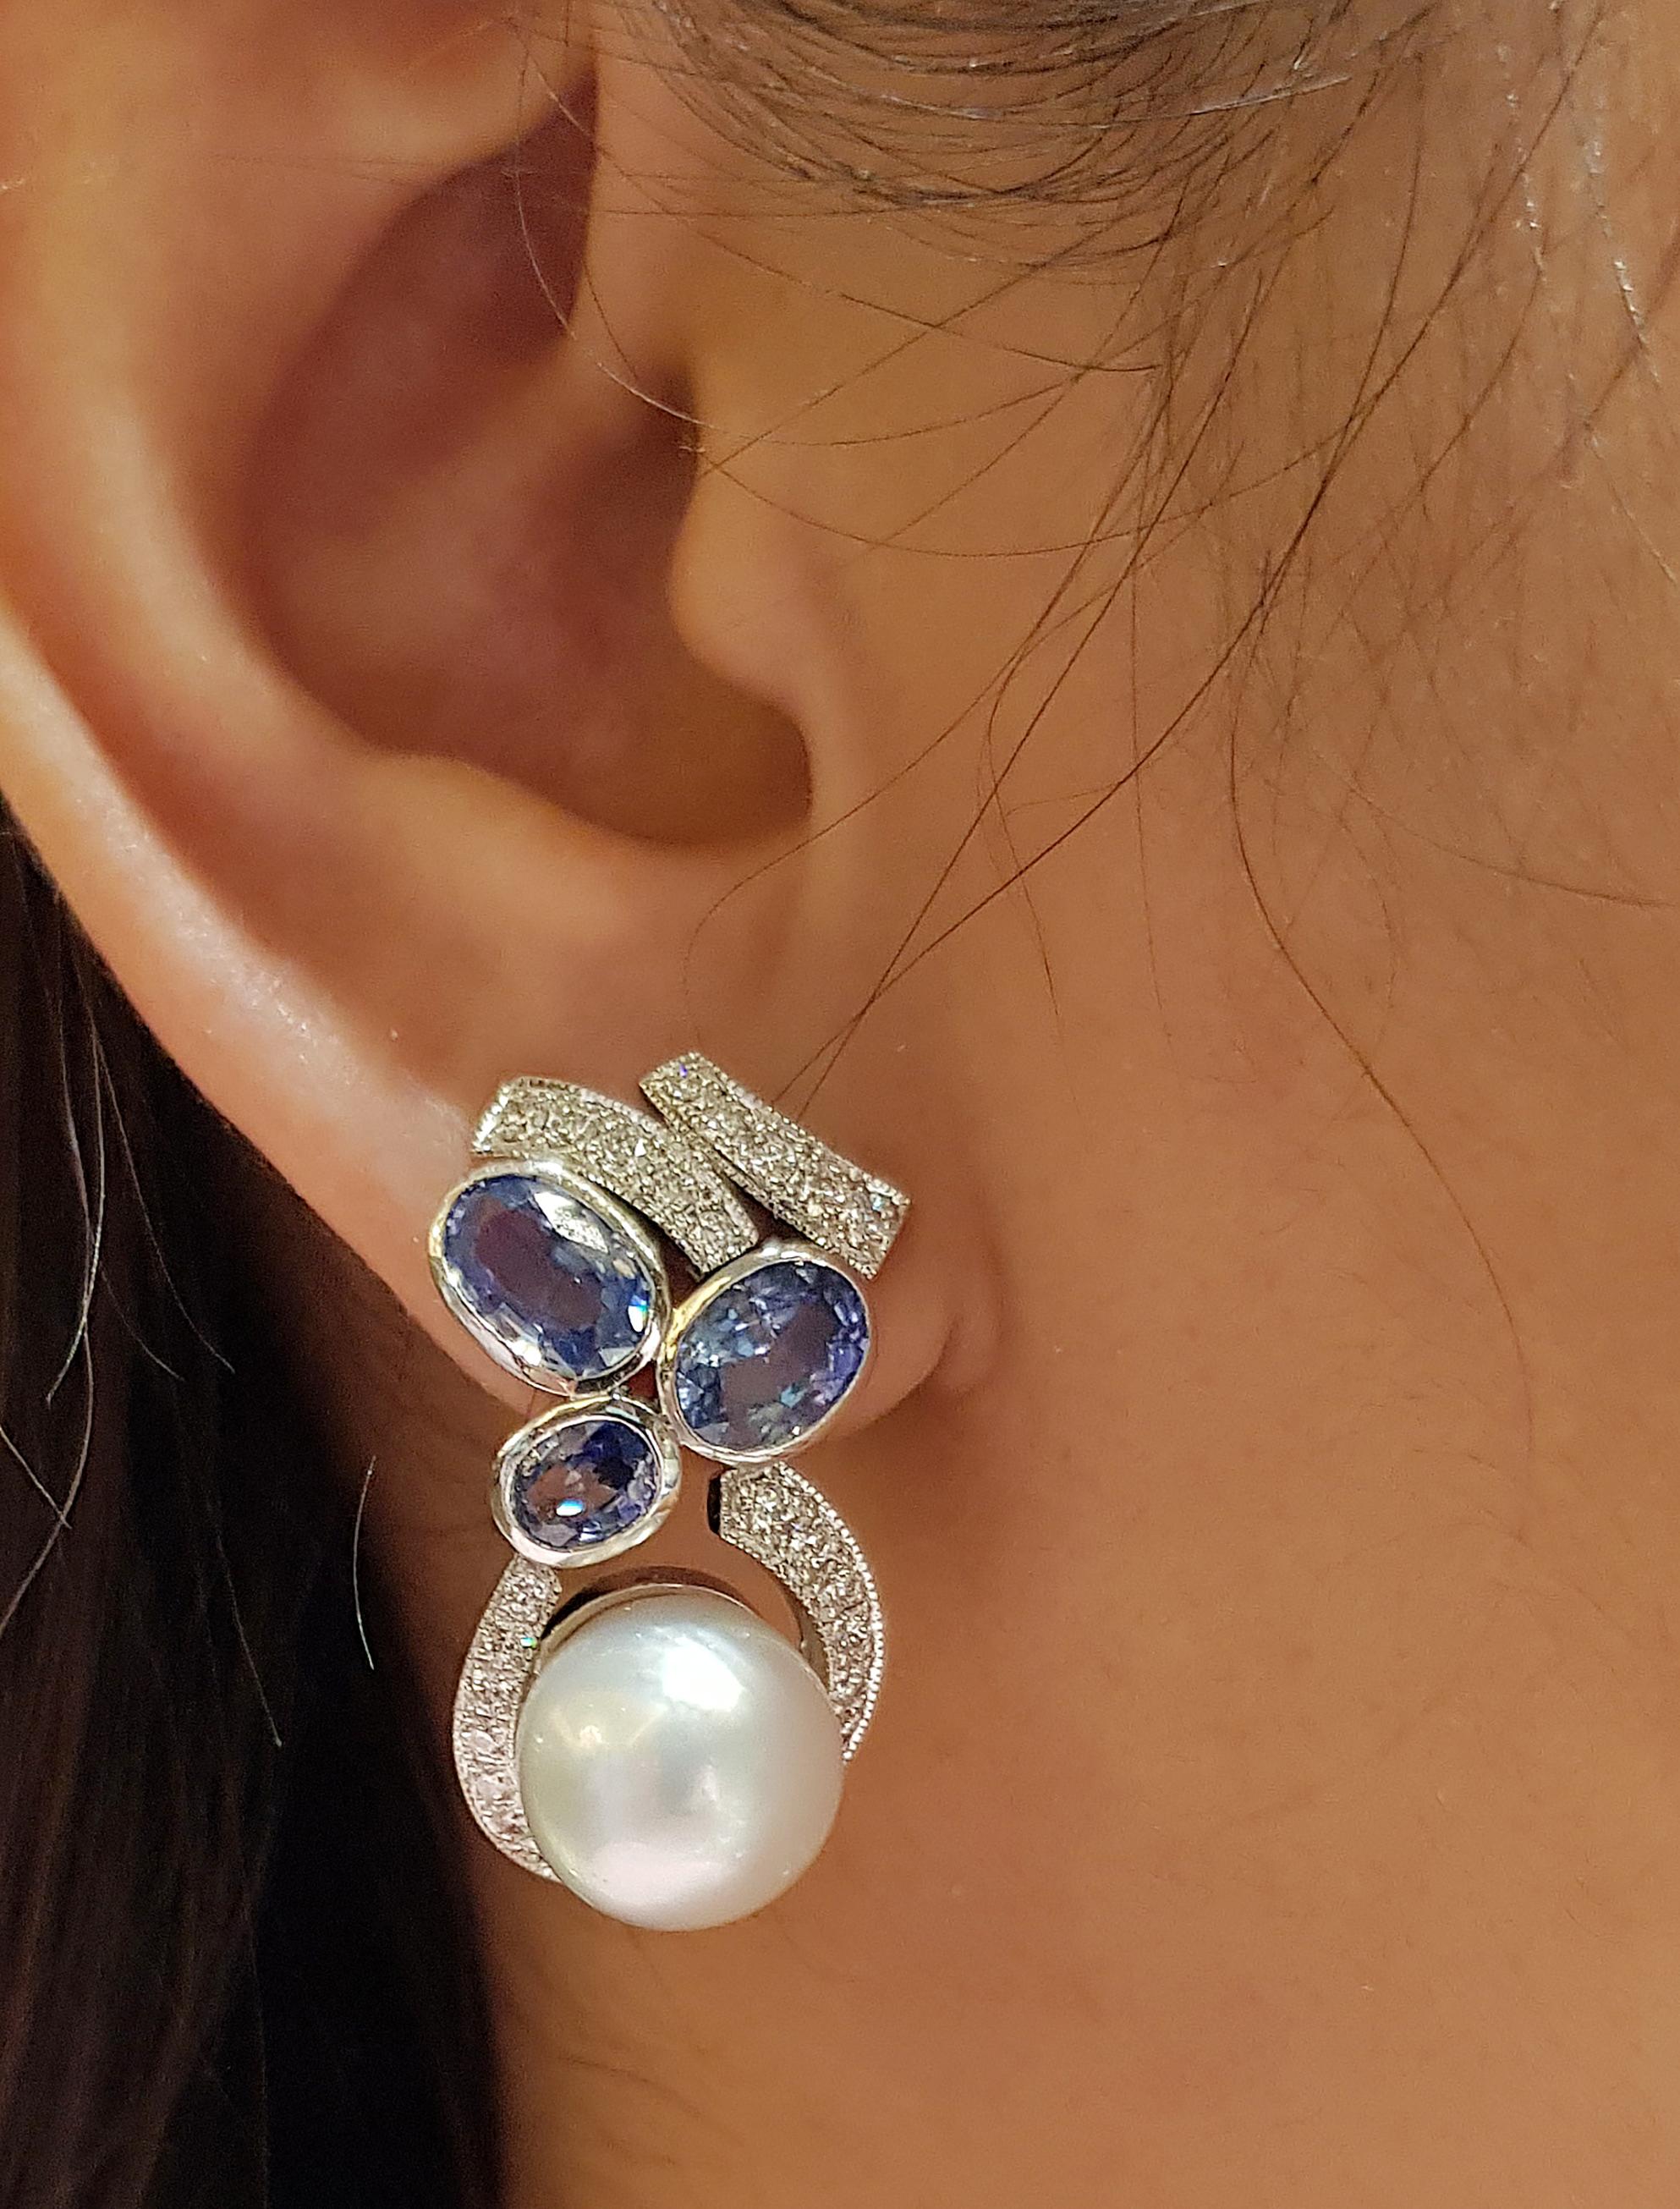 Südseeperle und blauer Saphir 6,05 Karat mit Diamant 0,87 Karat Ohrringe in 18 Karat Weißgold gefasst

Breite:  1,1 cm 
Länge: 3,0 cm
Gesamtgewicht: 17,55 Gramm

